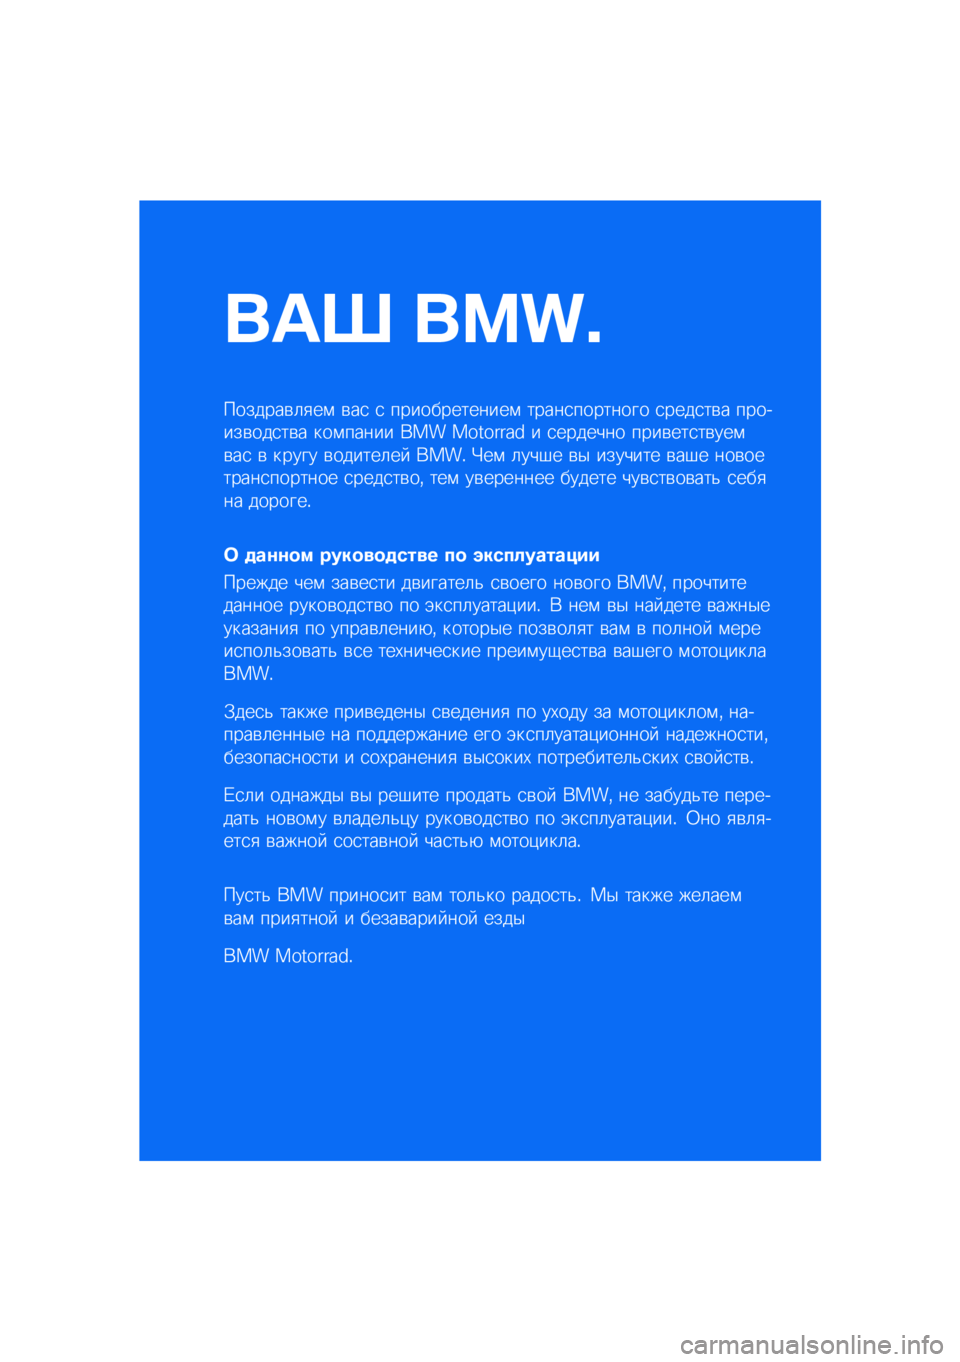 BMW MOTORRAD R NINE T URVAN G/S 2021  Руководство по эксплуатации (in Russian) ��� ����\b
�������\b�	�
��\f �\b��
 �
 �������������\f �����
�������� �
����
��\b� �������\b���
��\b� ���\f����� ��� �������� � 